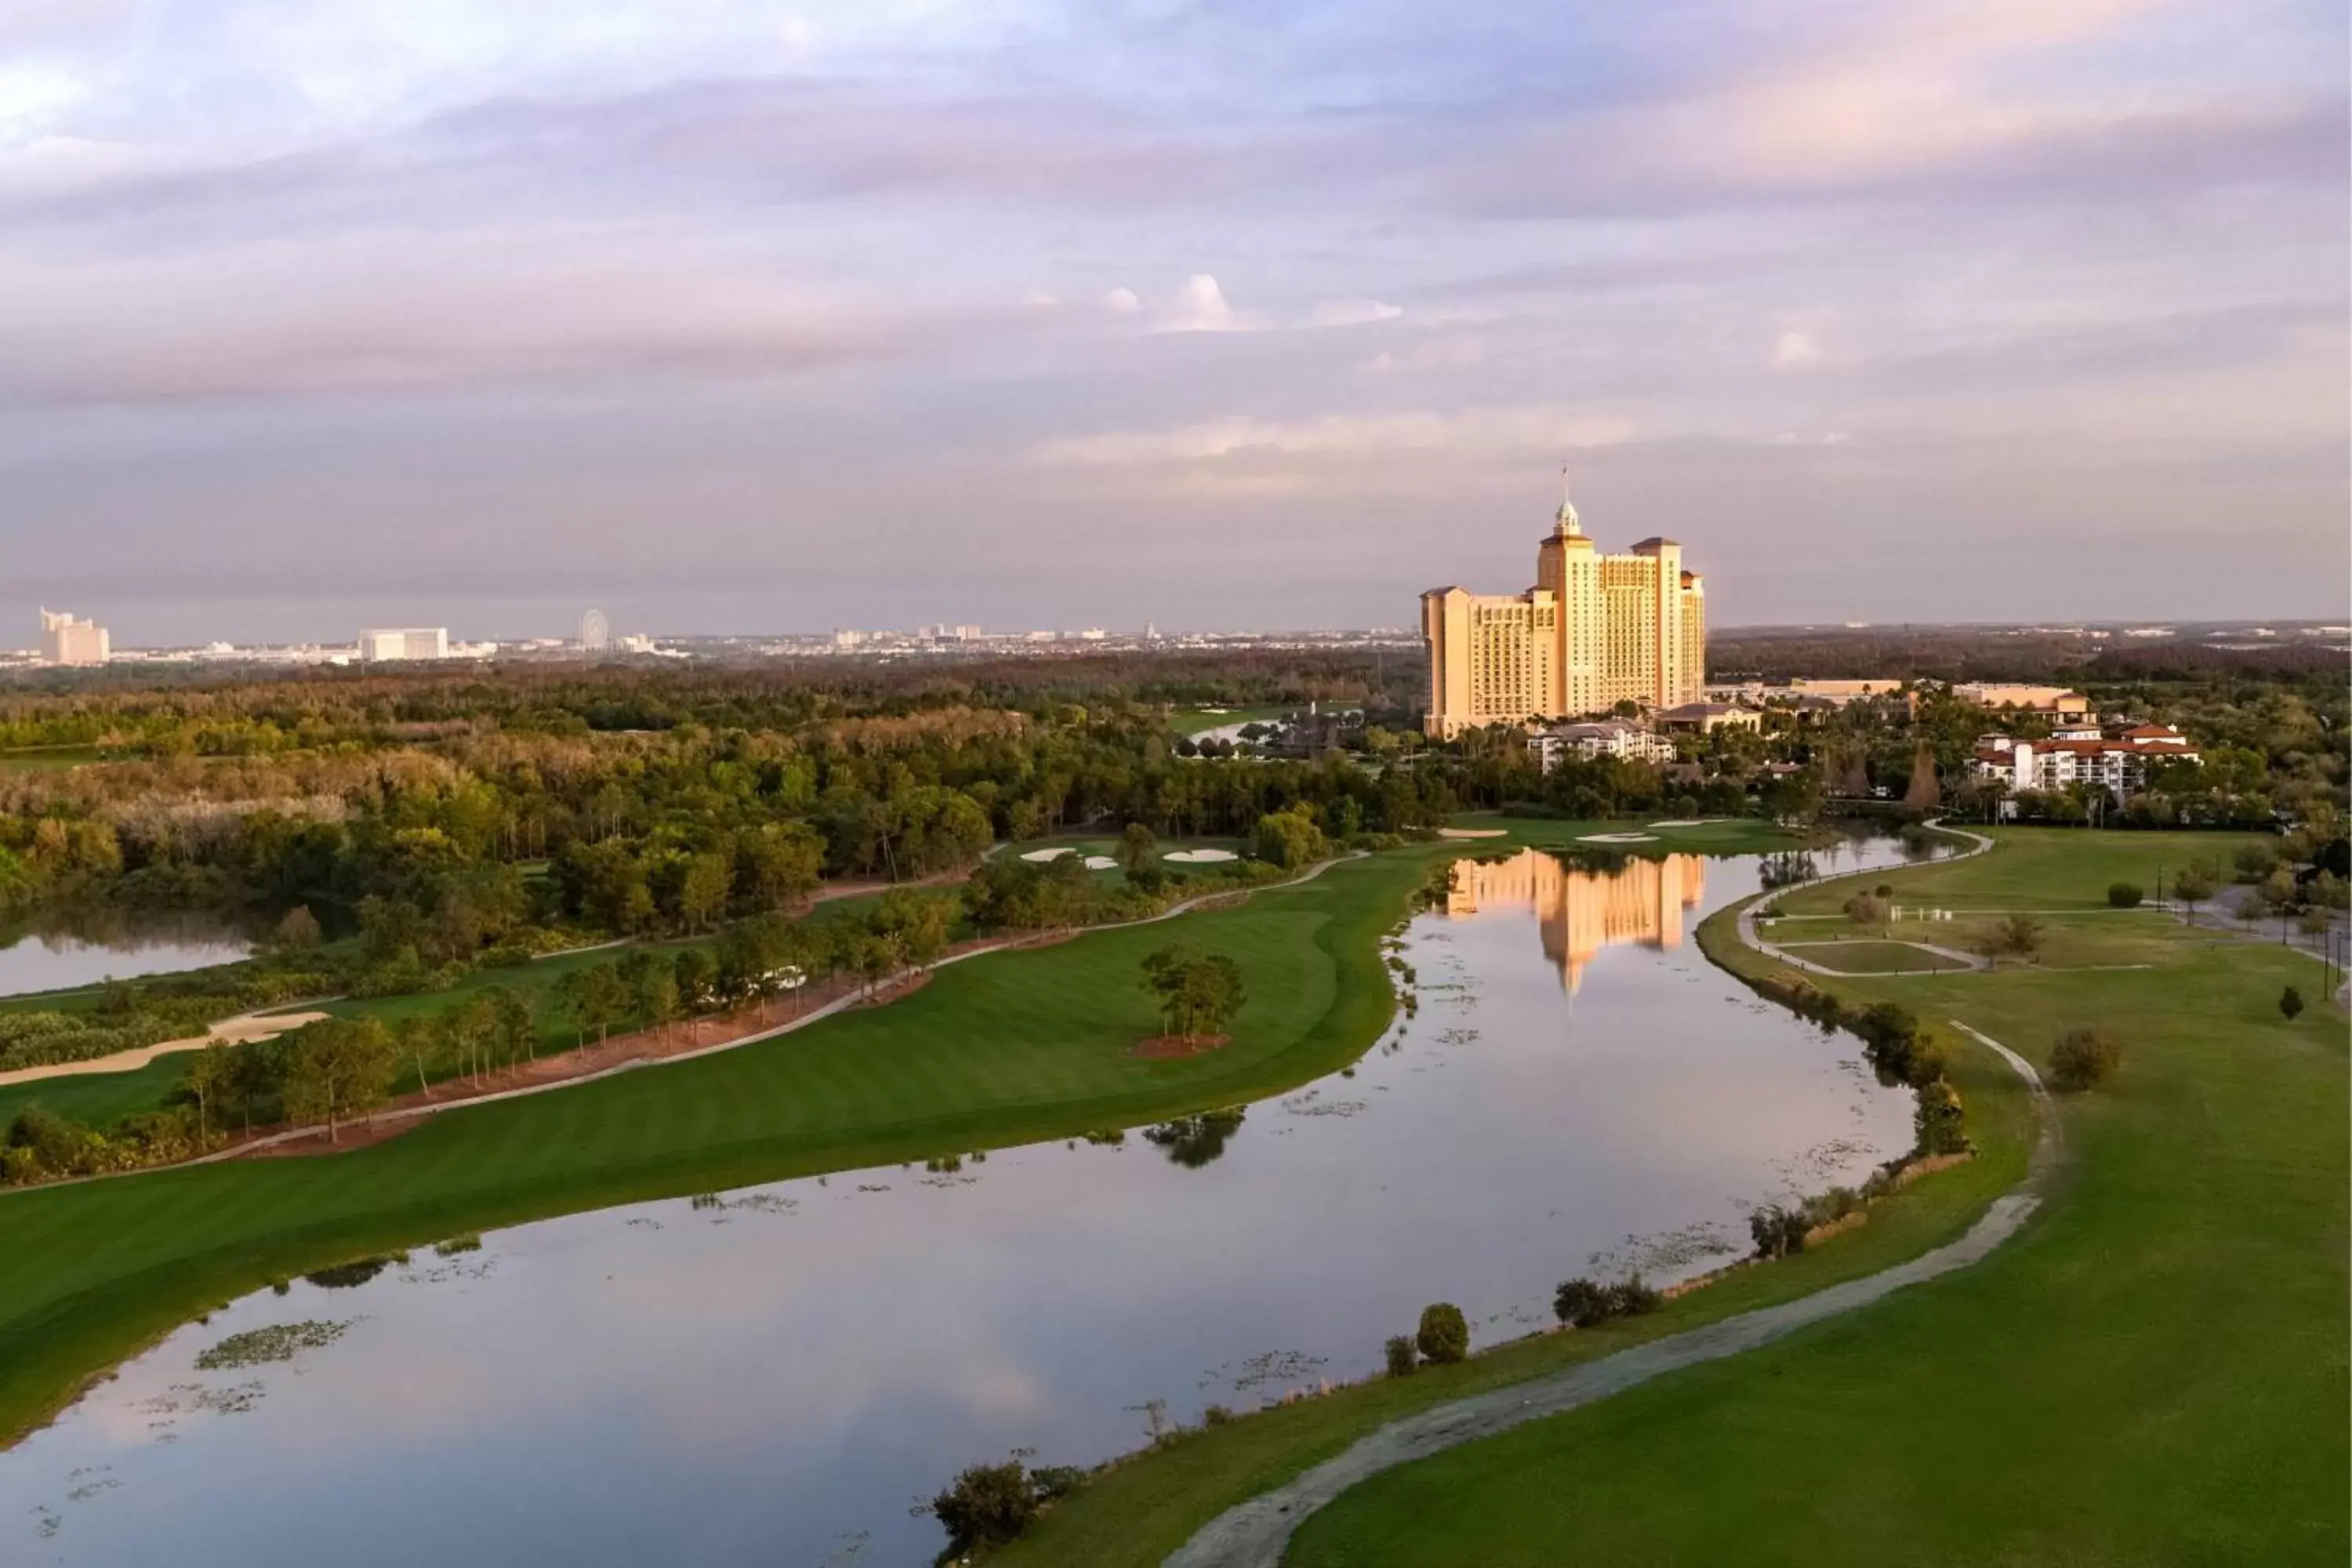 Golfcourse in The Ritz-Carlton Orlando, Grande Lakes